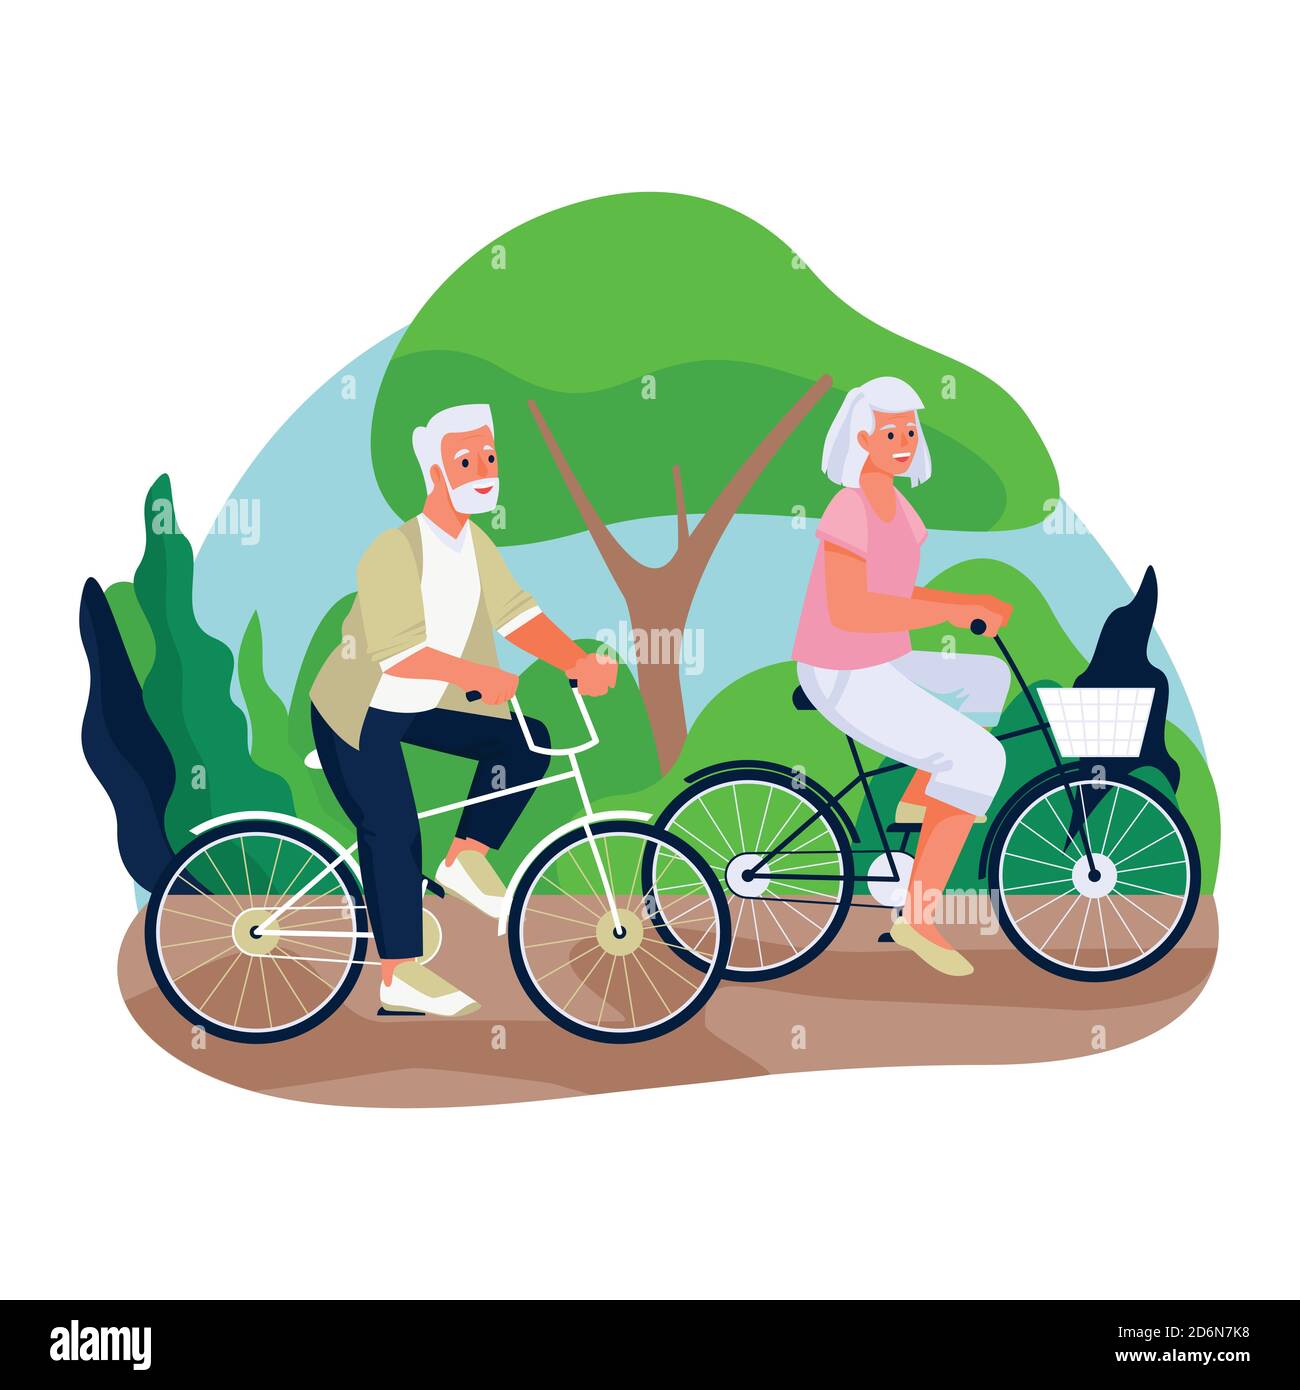 Ältere Paare fahren Fahrräder auf dem Land. Vector flache Cartoon-Illustration des Frühlings oder Sommer Freizeit im Freien. Konzept der aktiven gesunden Leben Stock Vektor